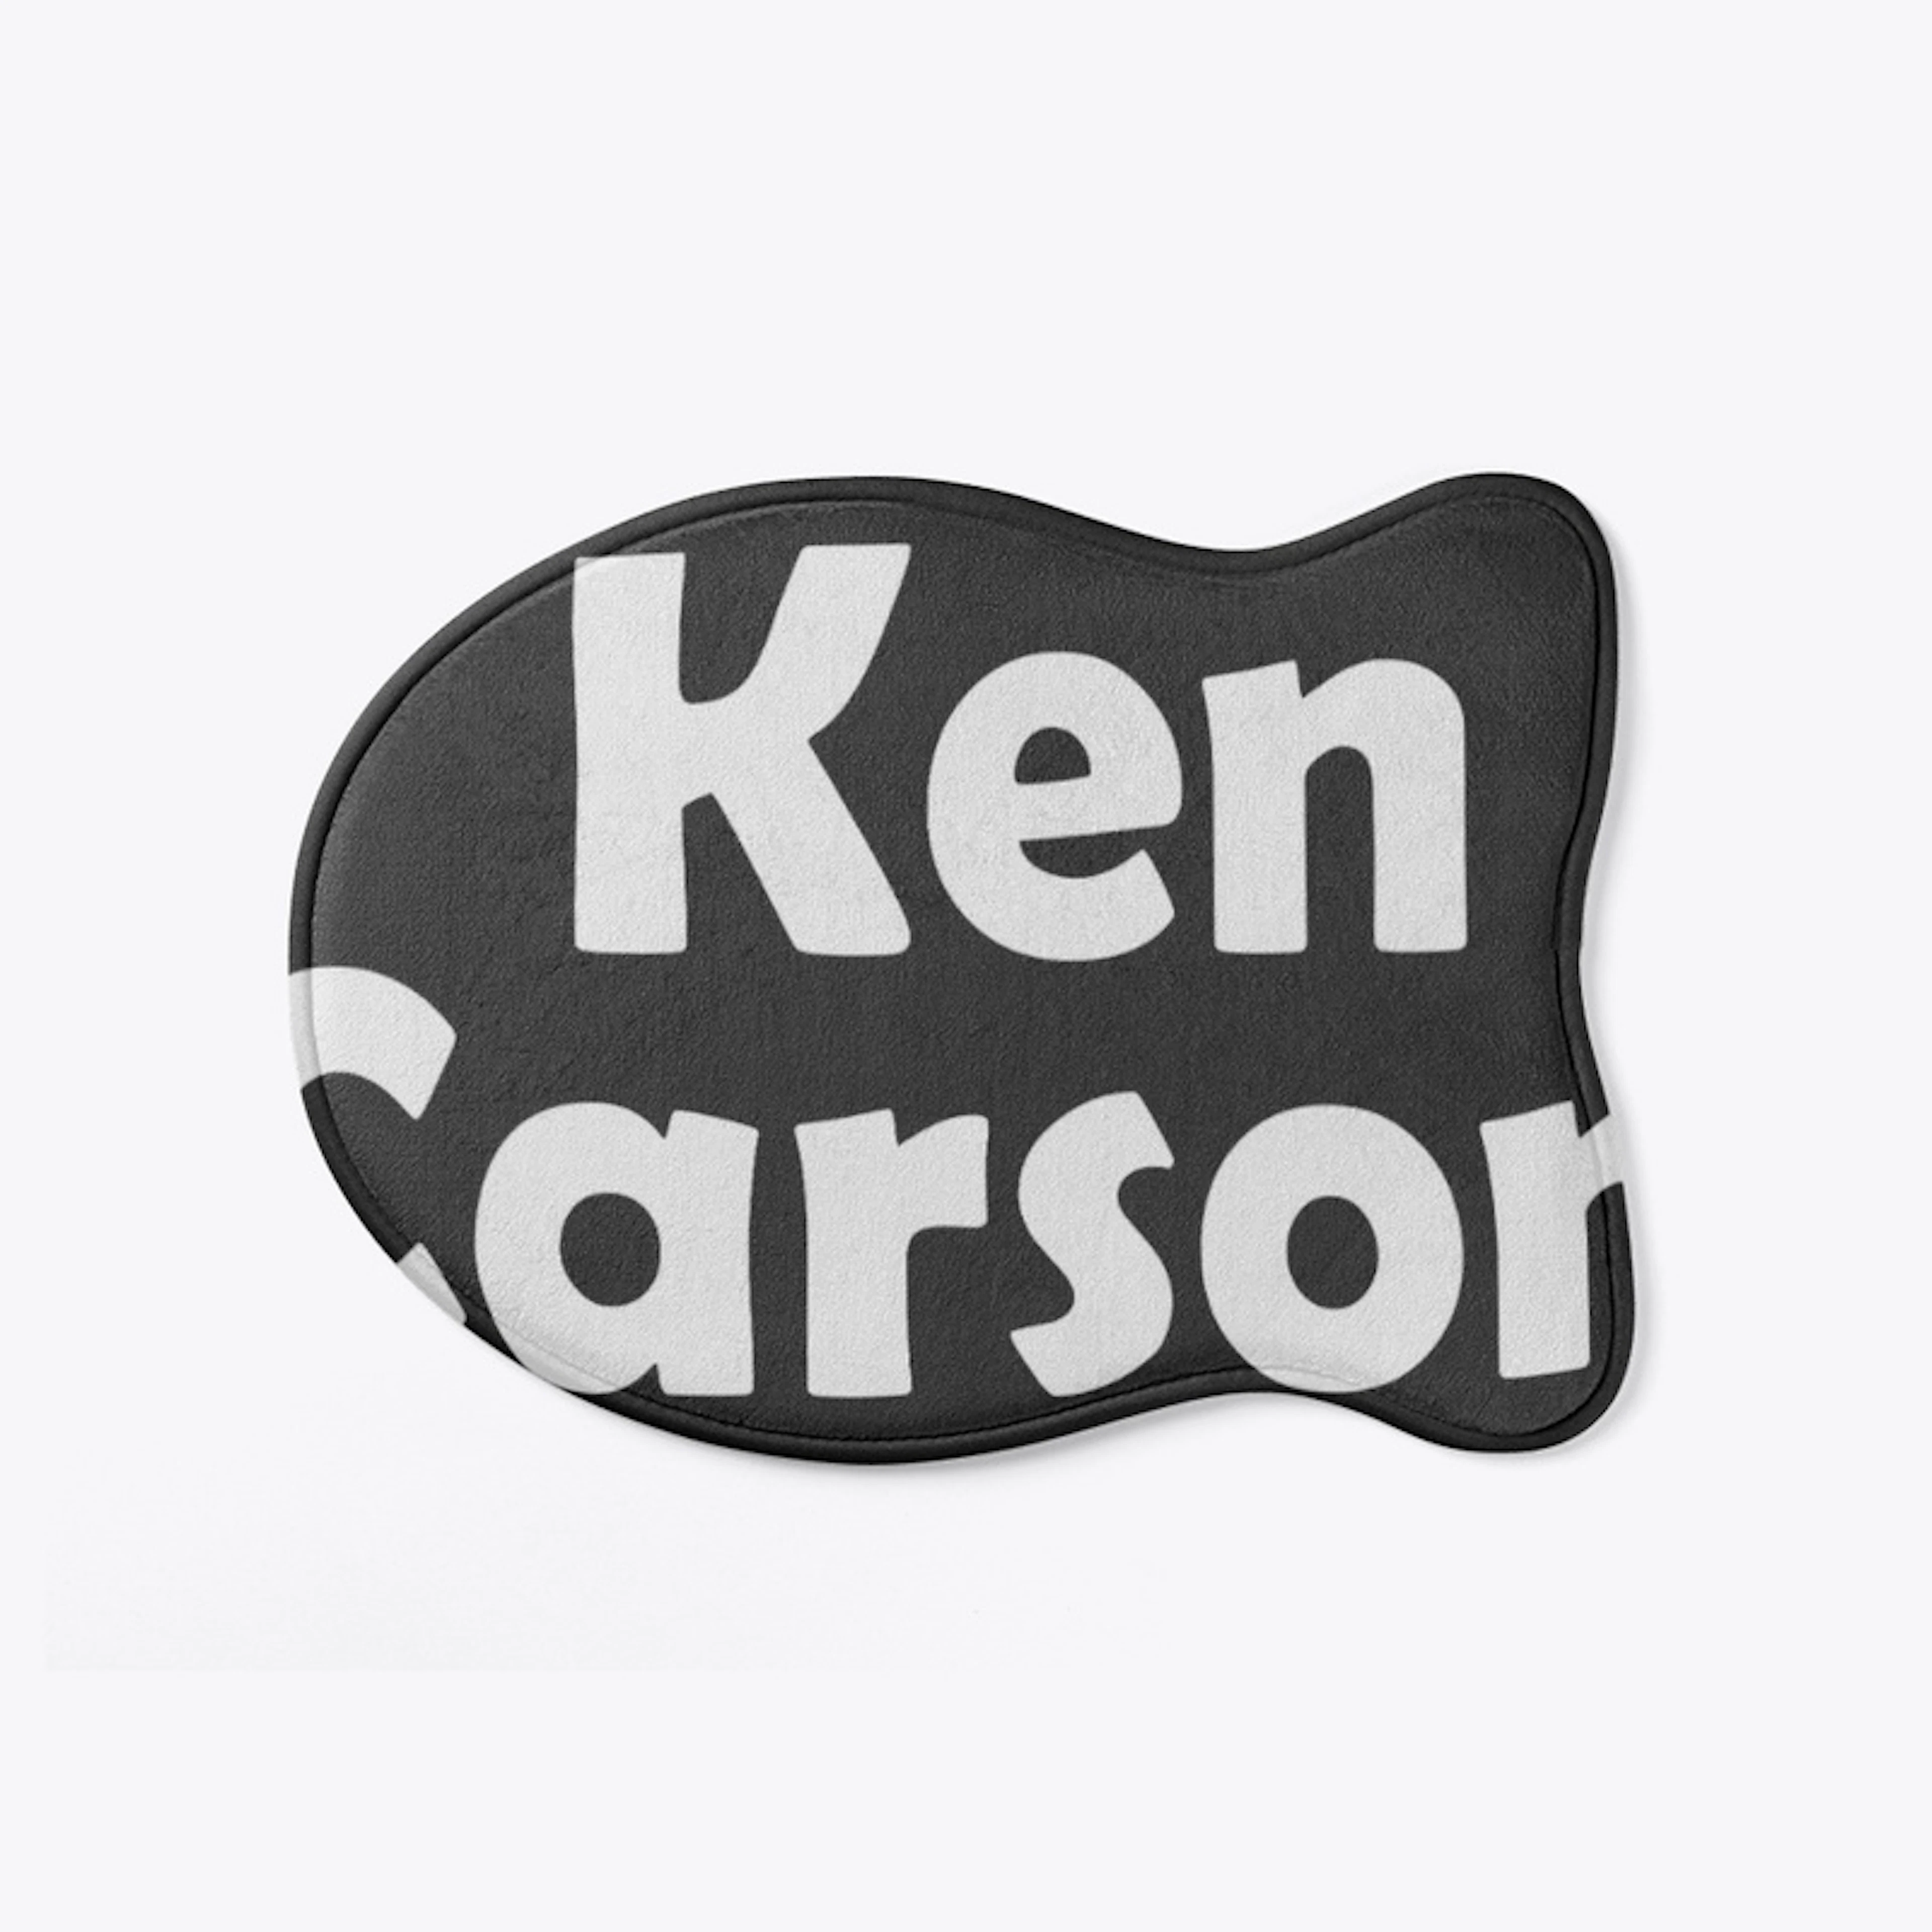 Ken Carson Merch Logo